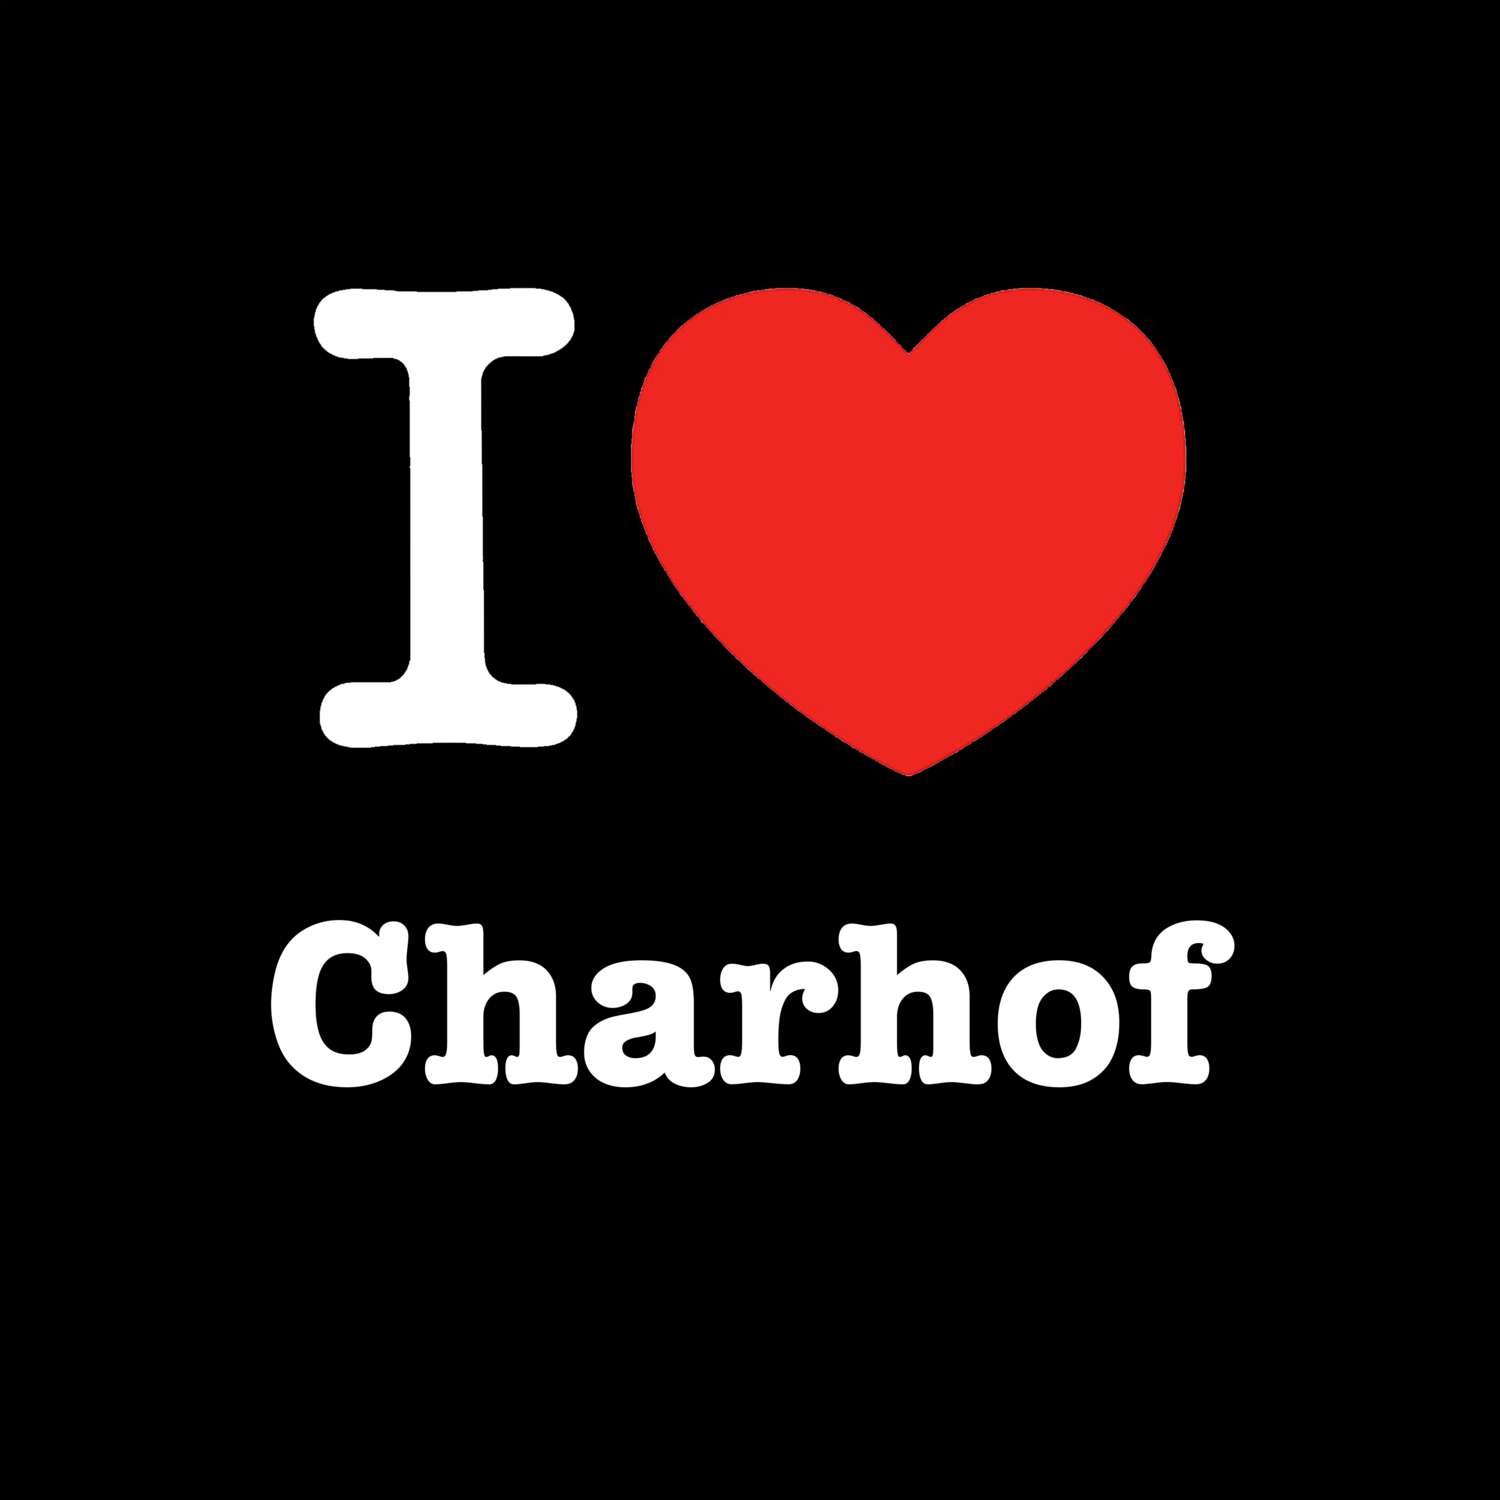 Charhof T-Shirt »I love«